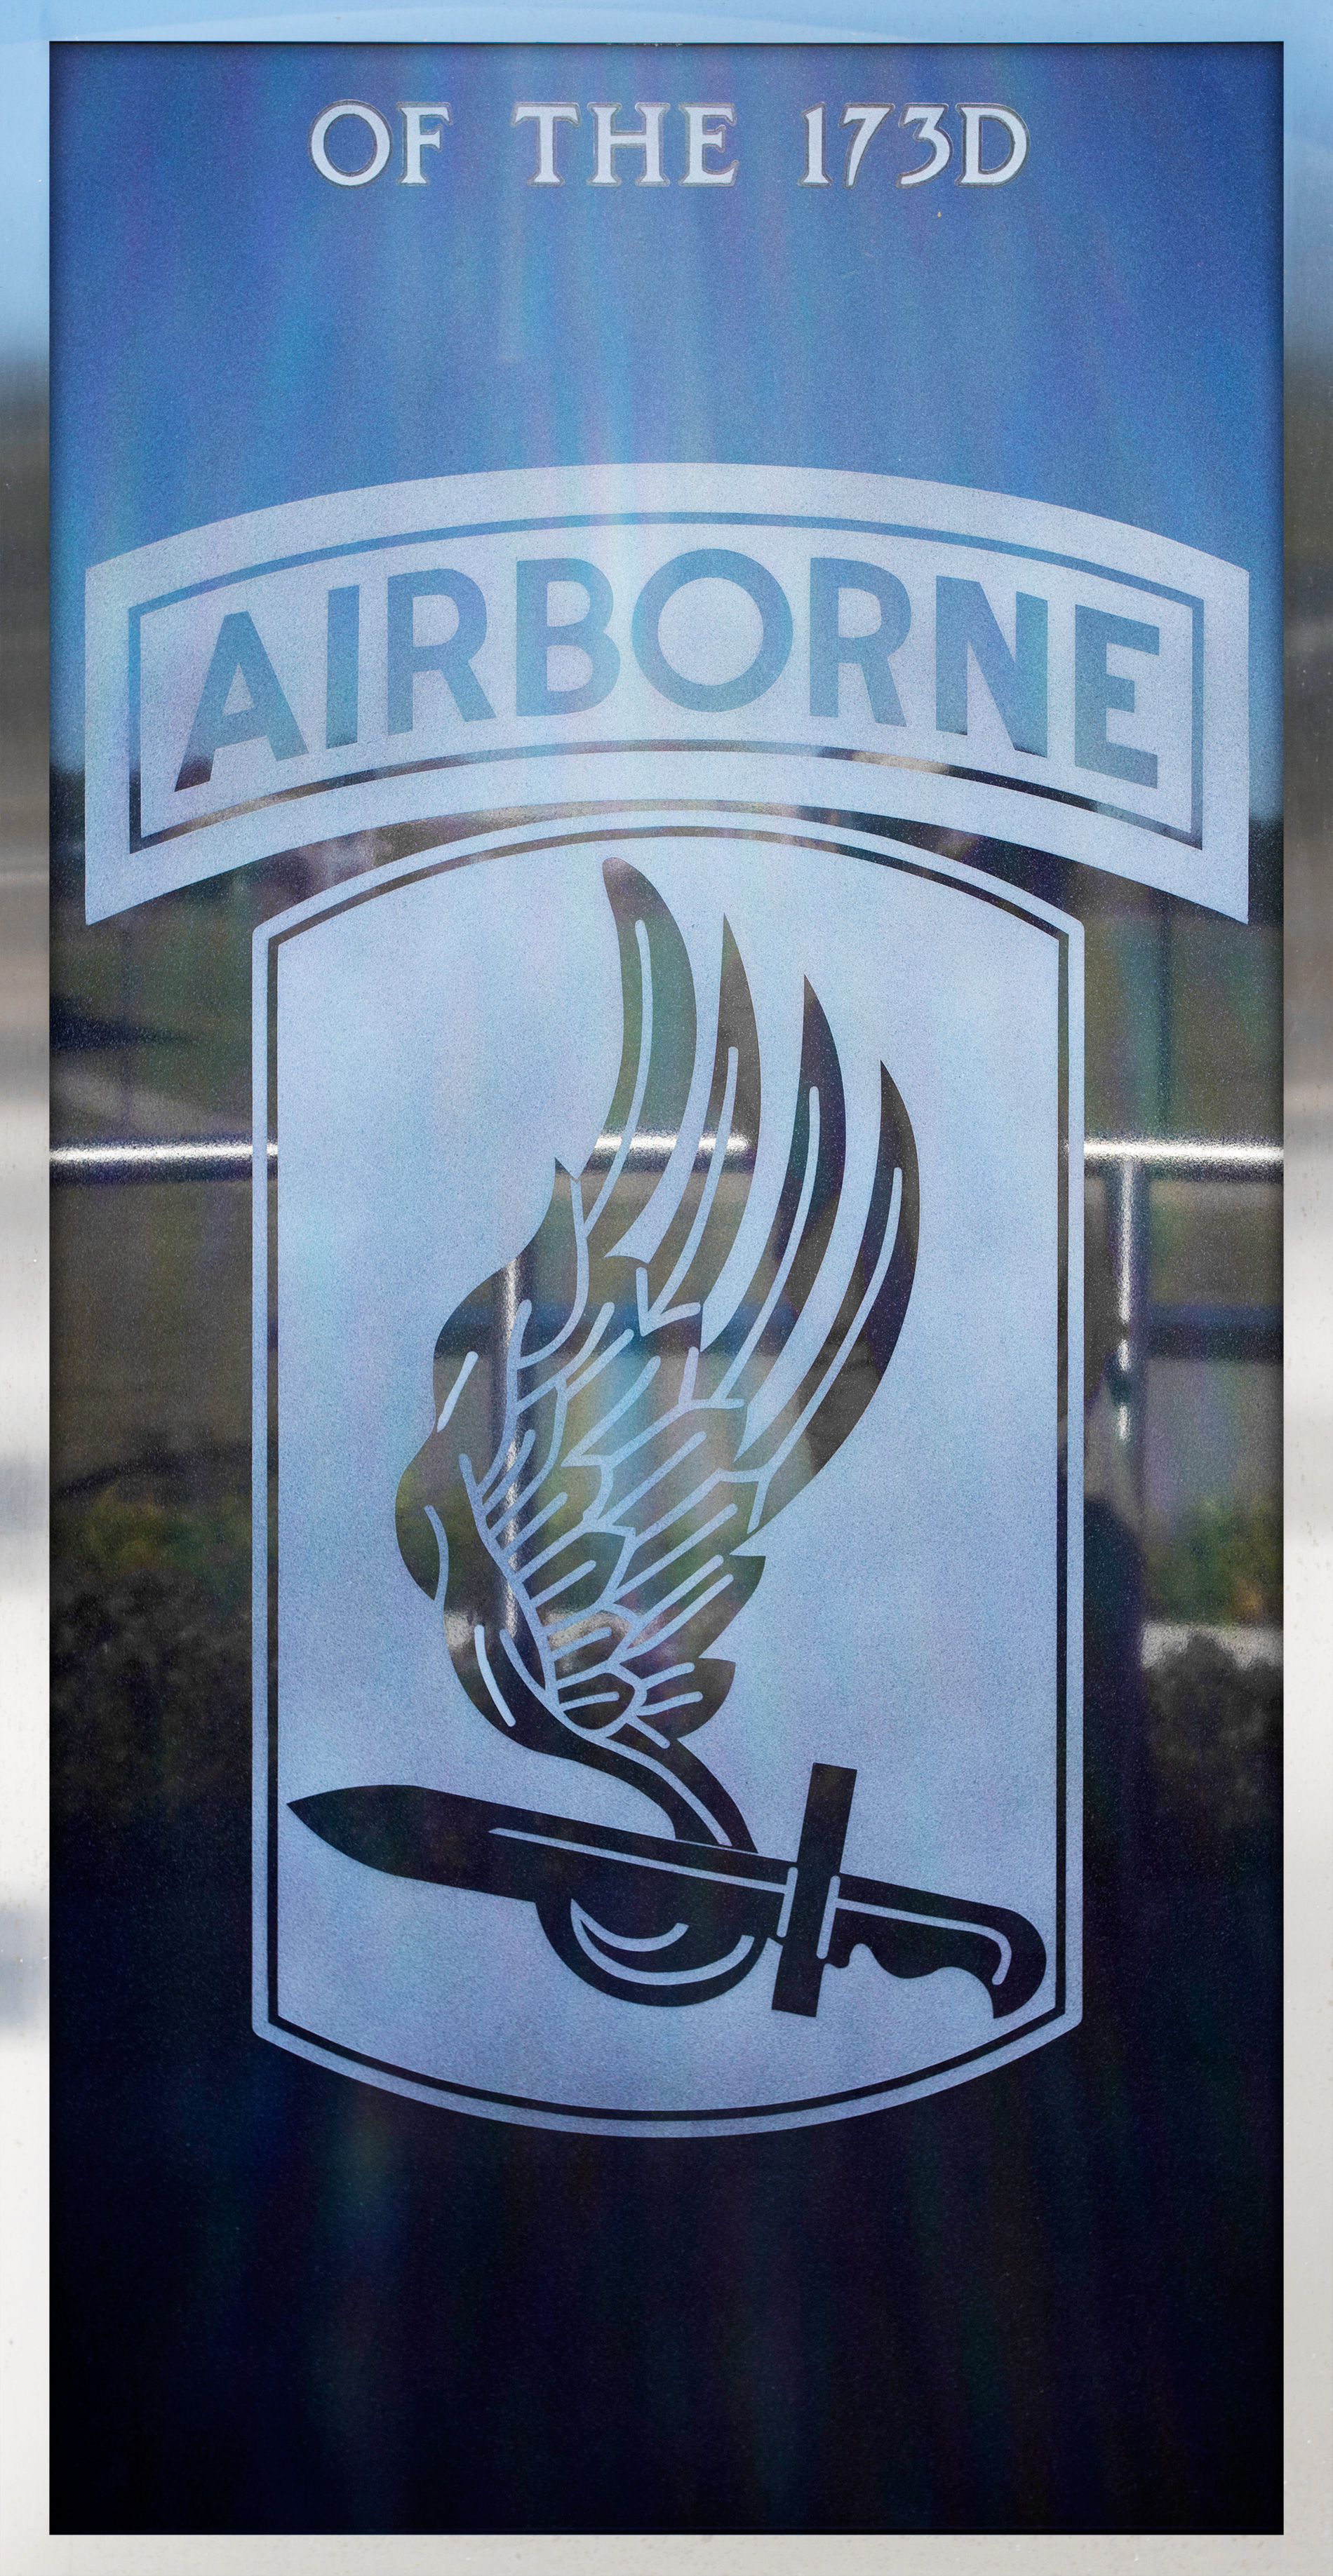 173rd Airborne Brigade